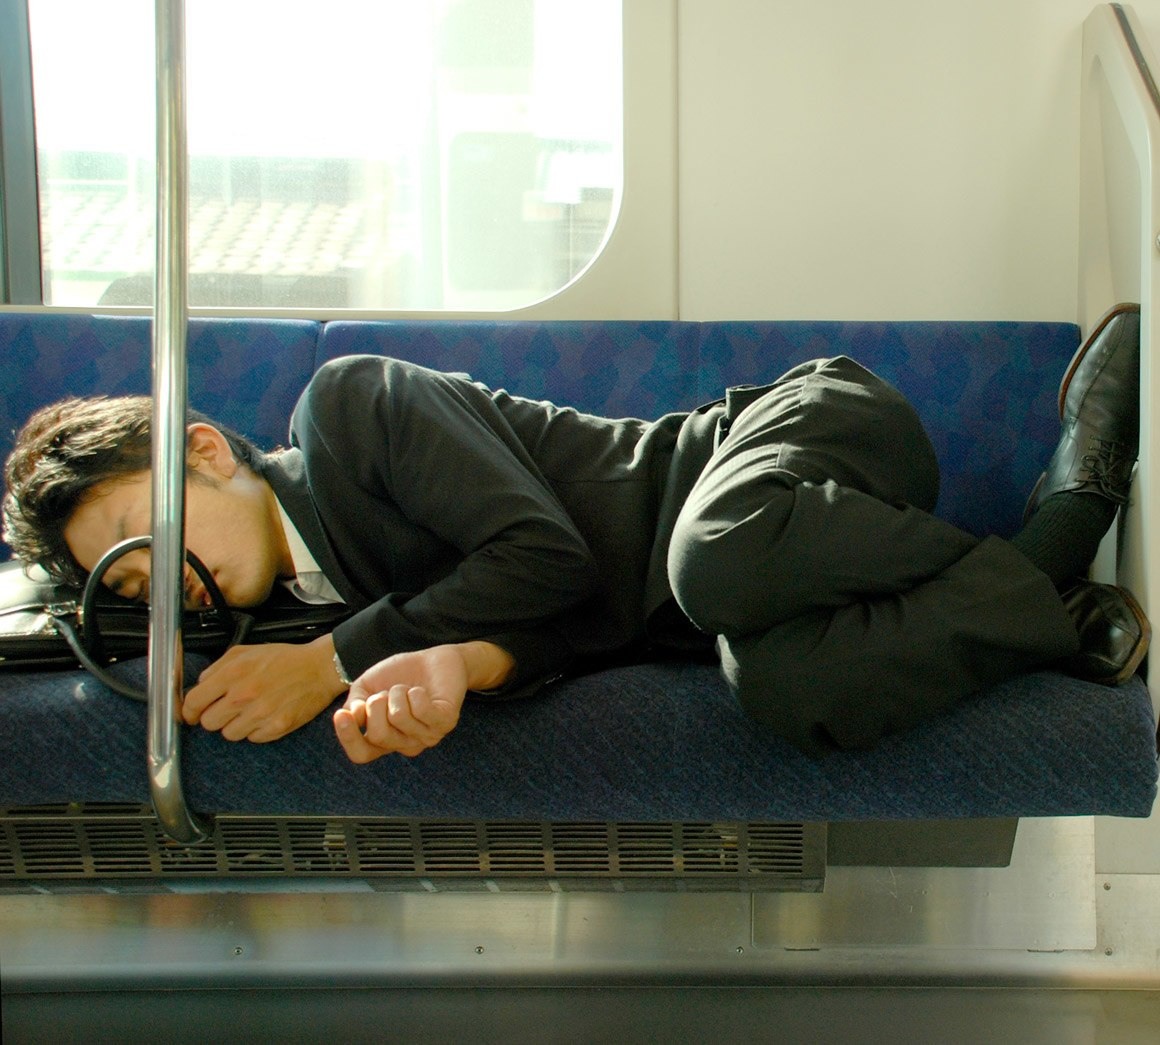 التقط هذه الصورة أحدهم في صباح يوم عمل عندما كان متوجها إلى (طوكيو) على متن القطار